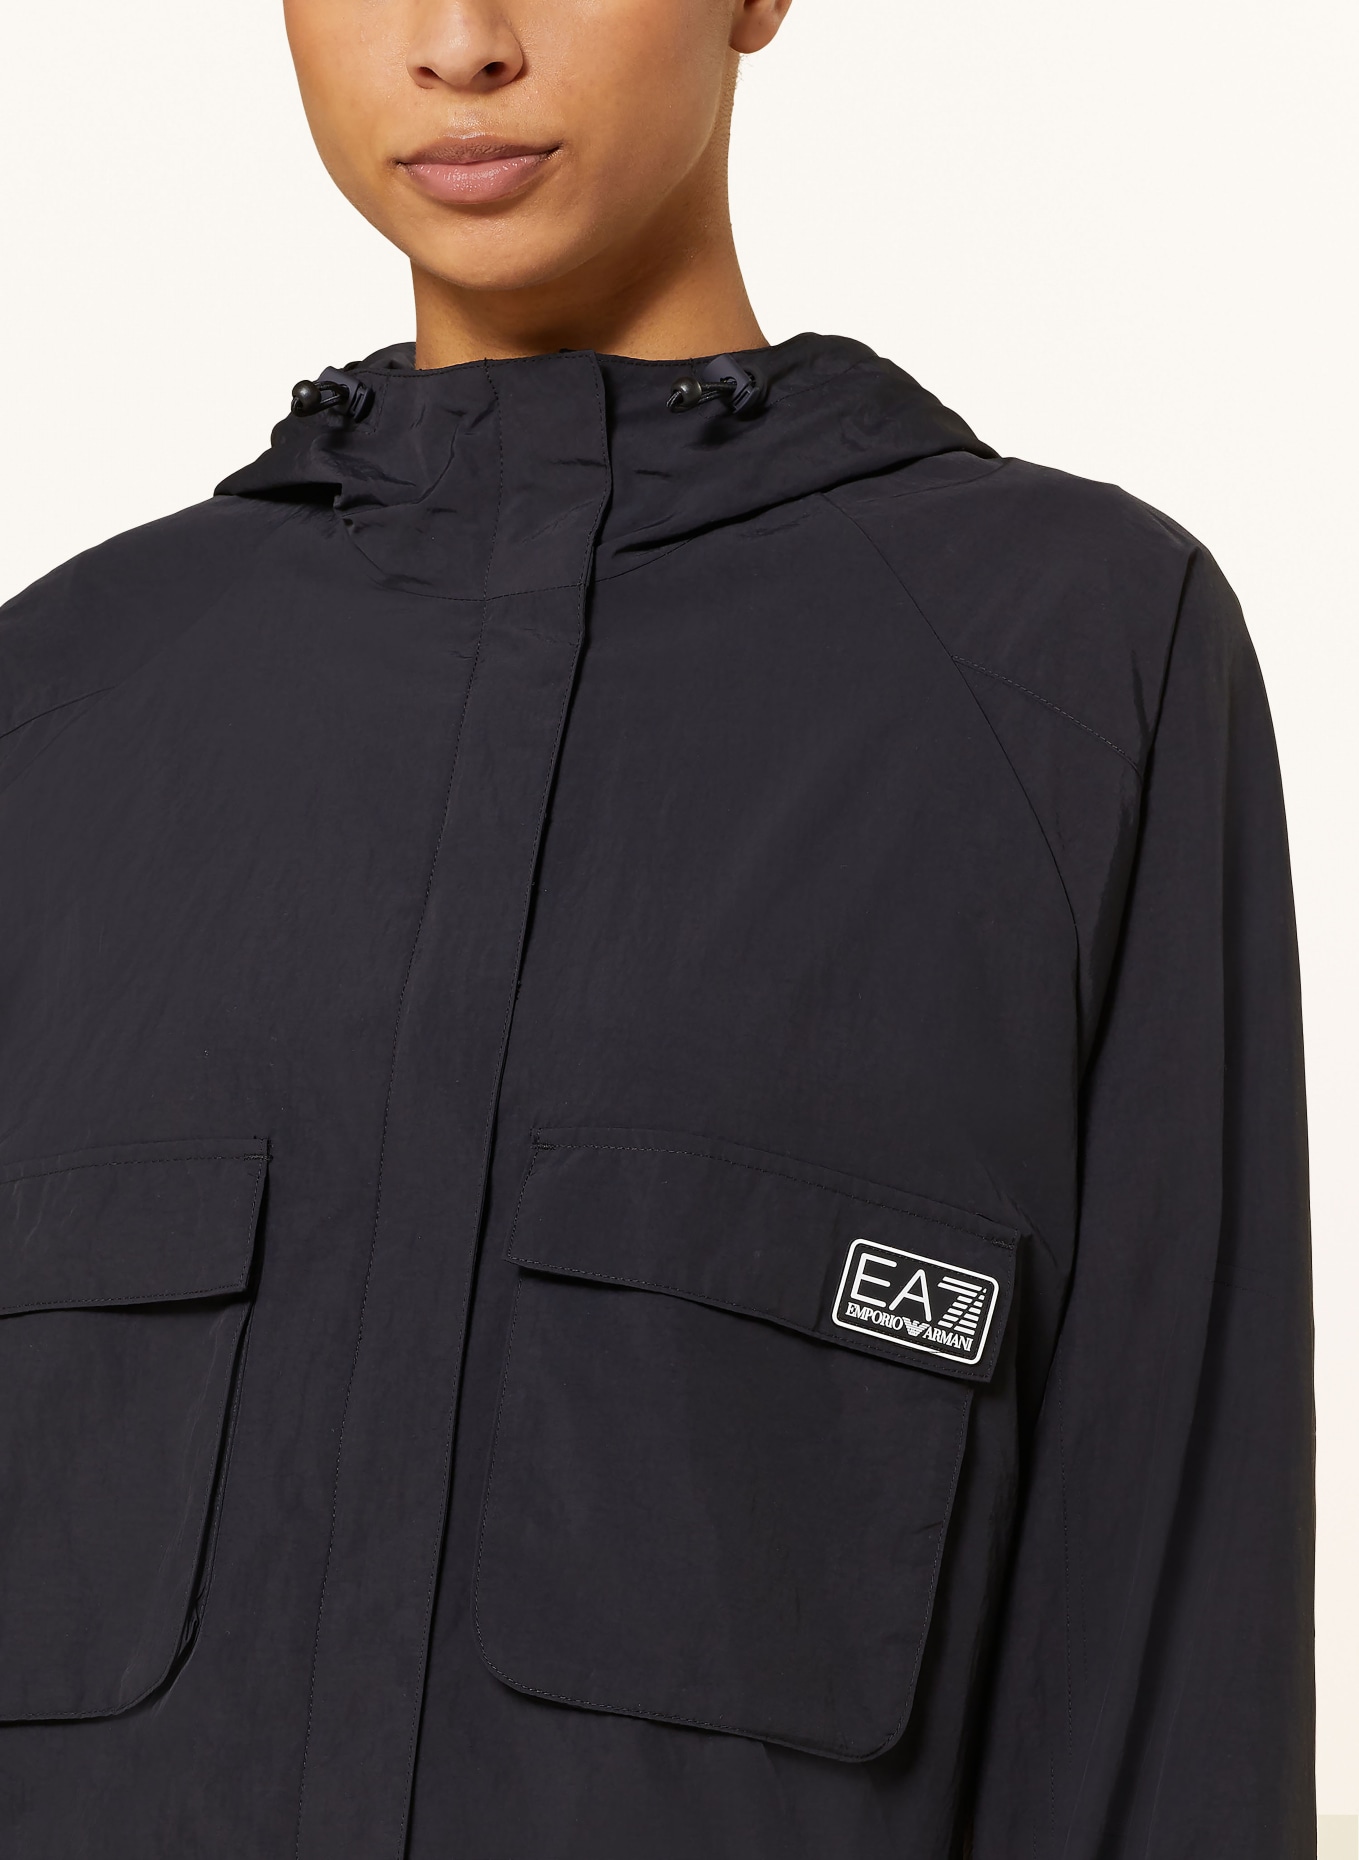 EA7 EMPORIO ARMANI Training jacket, Color: BLACK (Image 5)